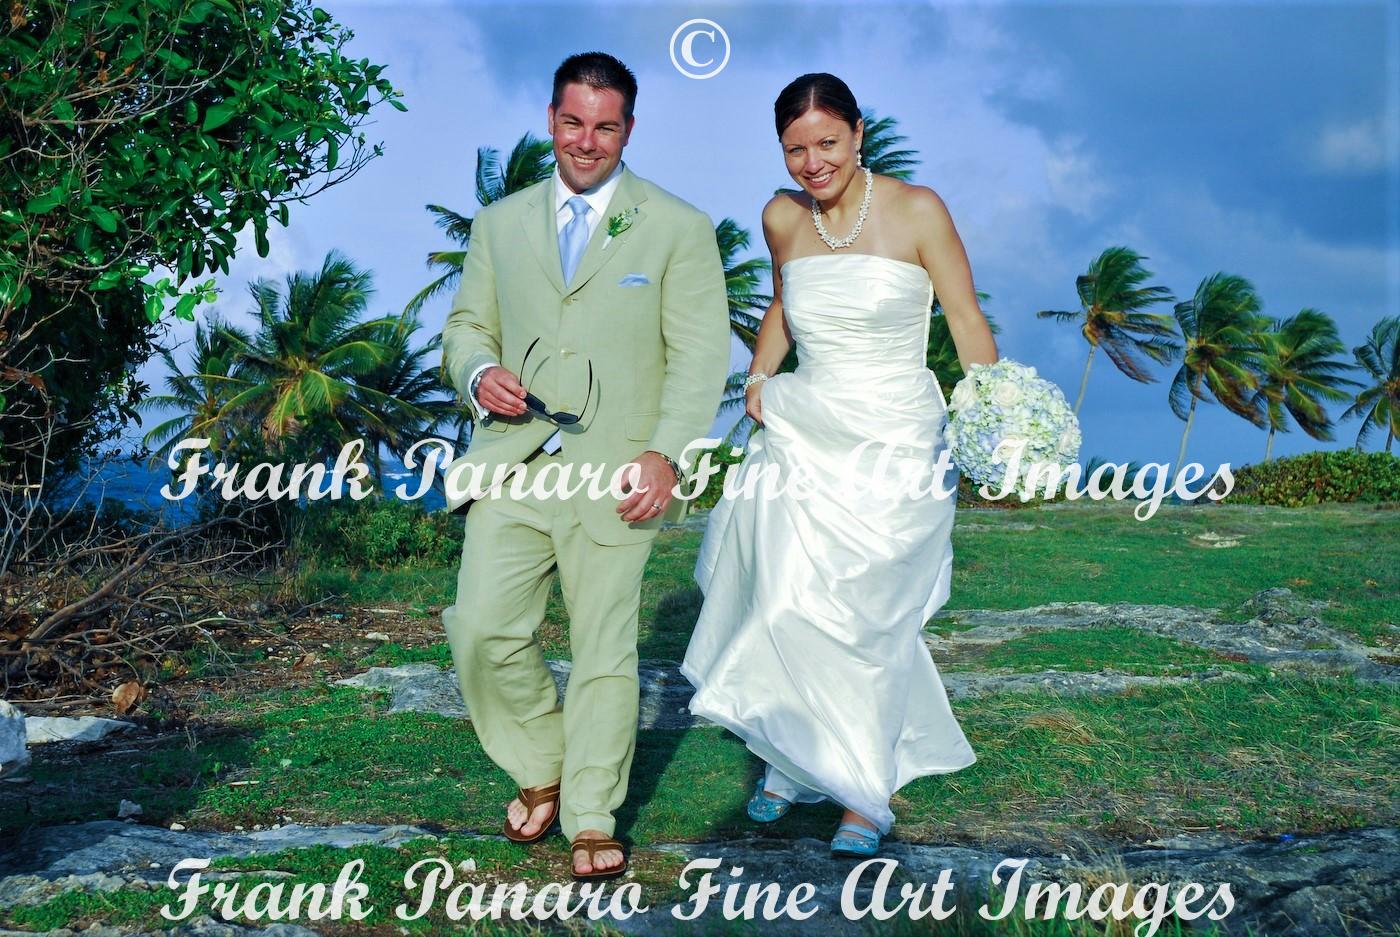 St. Maarten Wedding Photographer